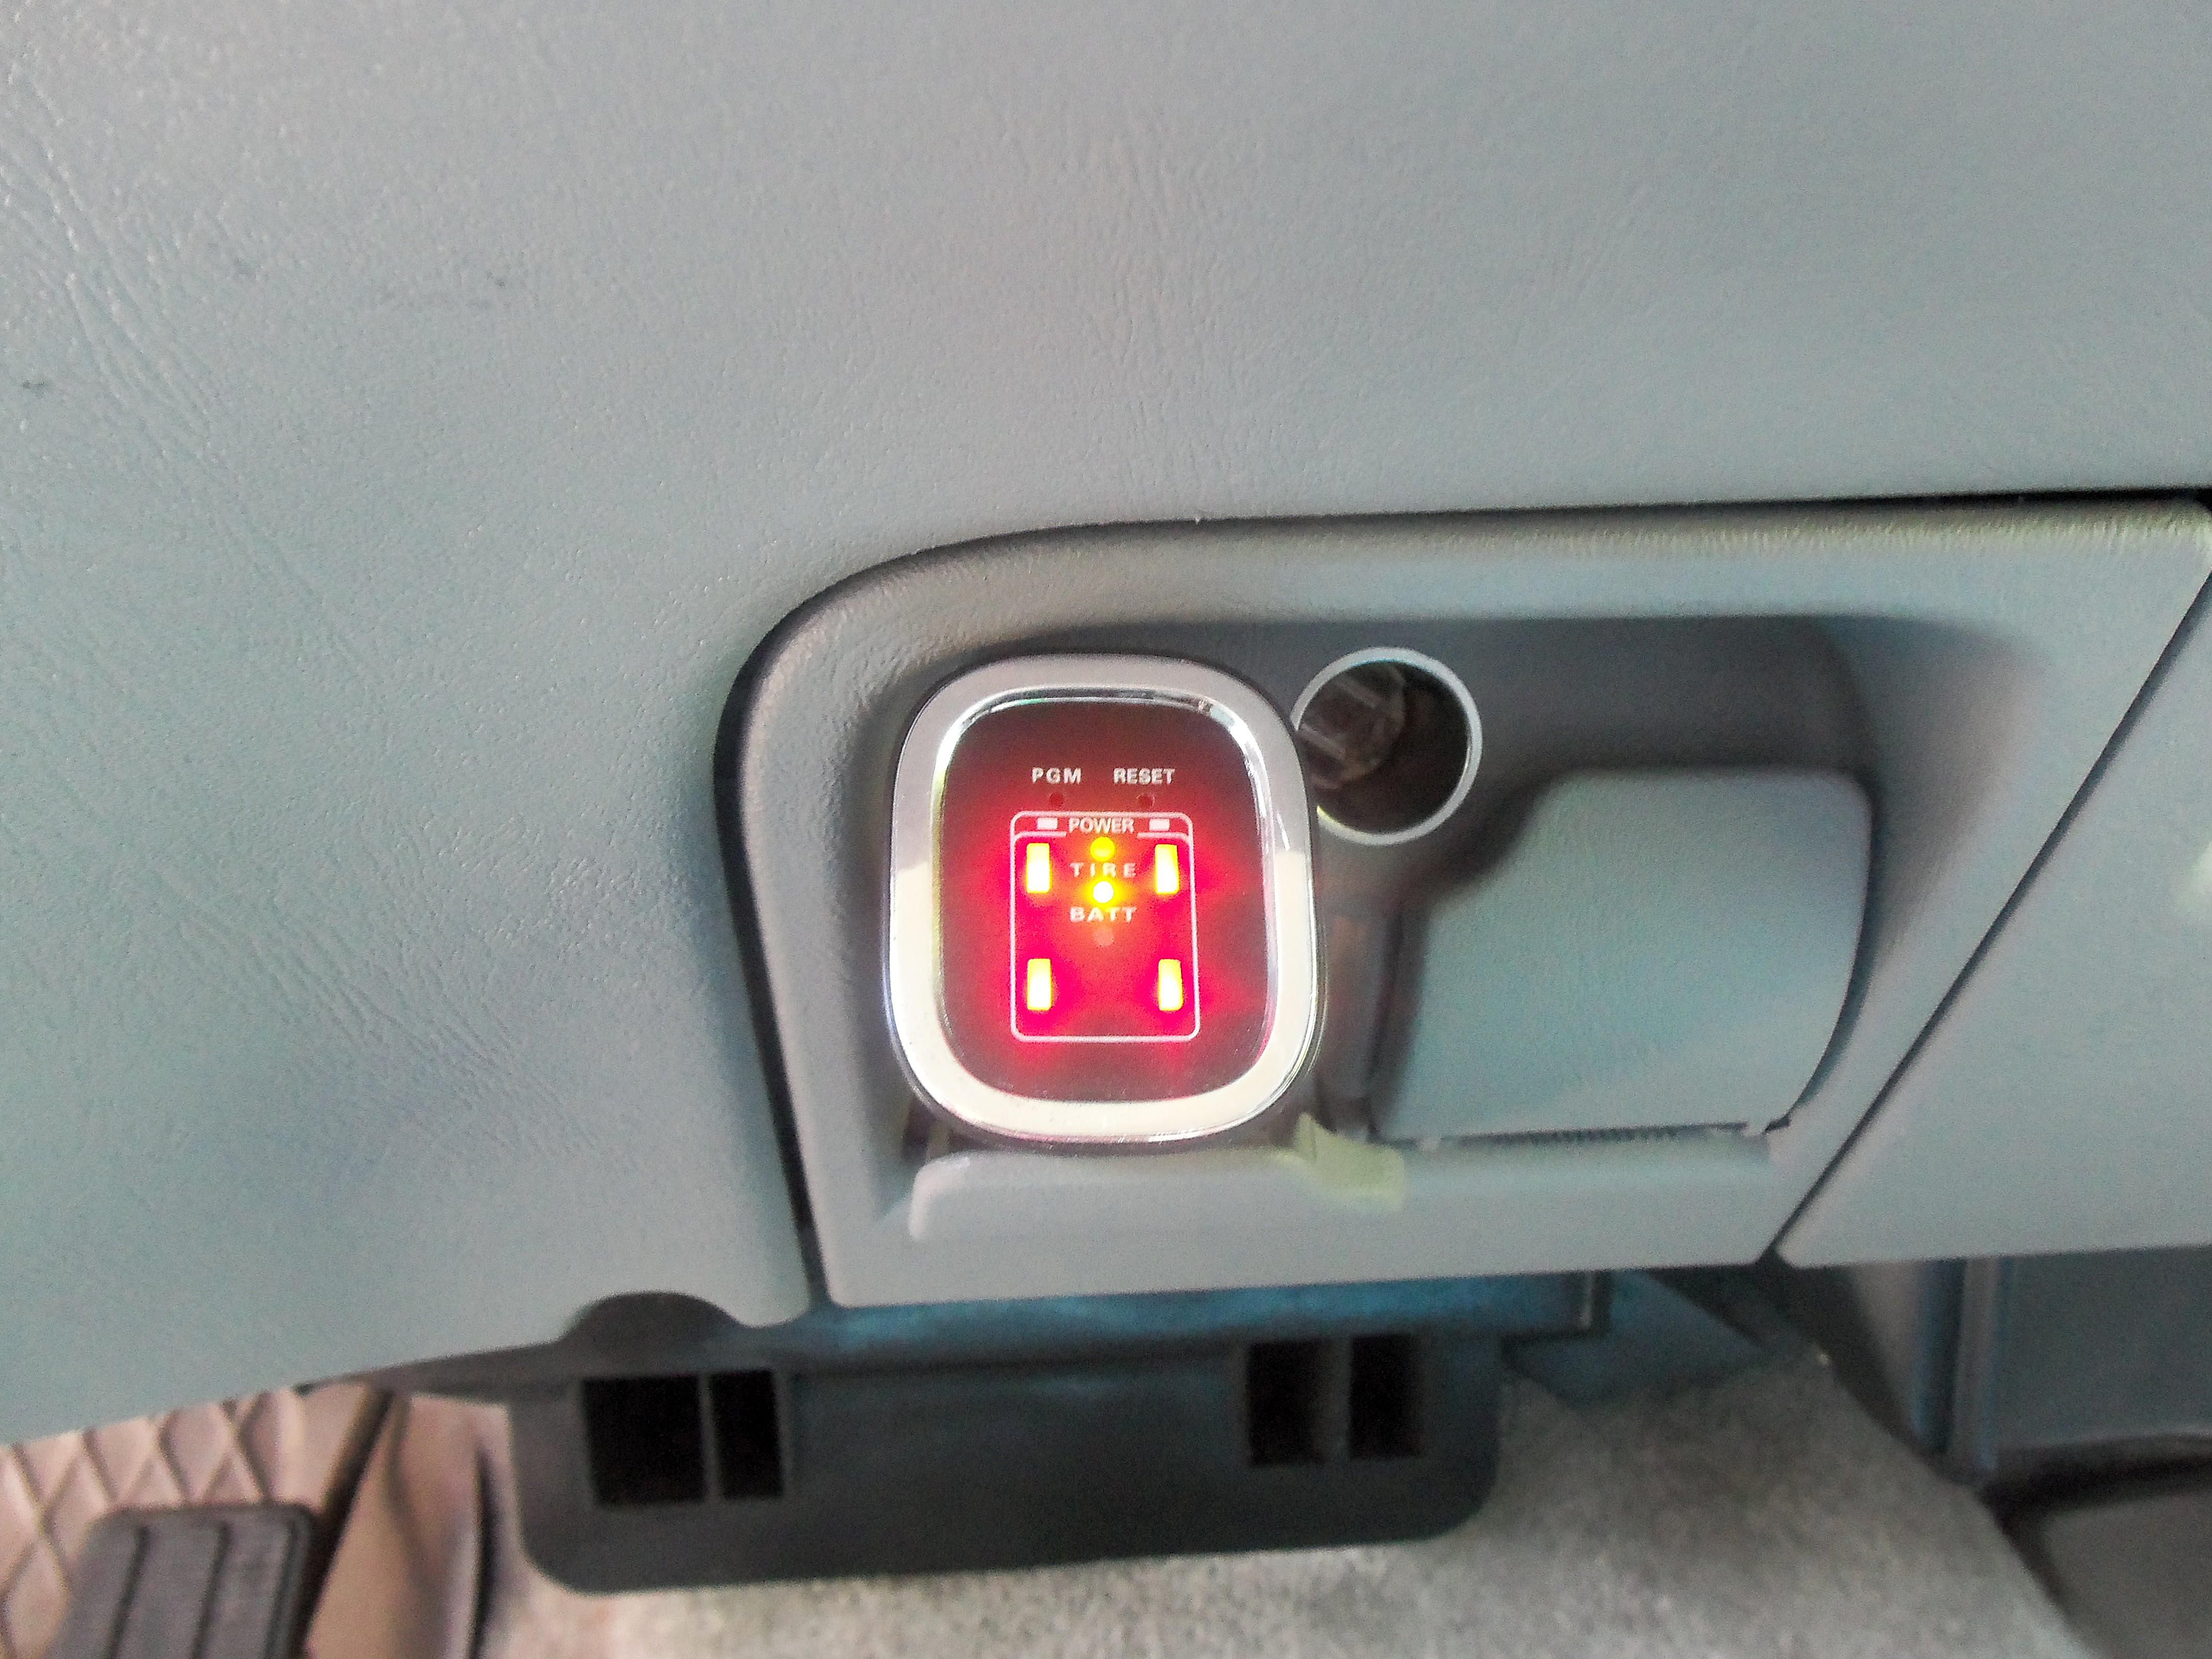 Přijímač TPMS instalovaný ve vozidle.